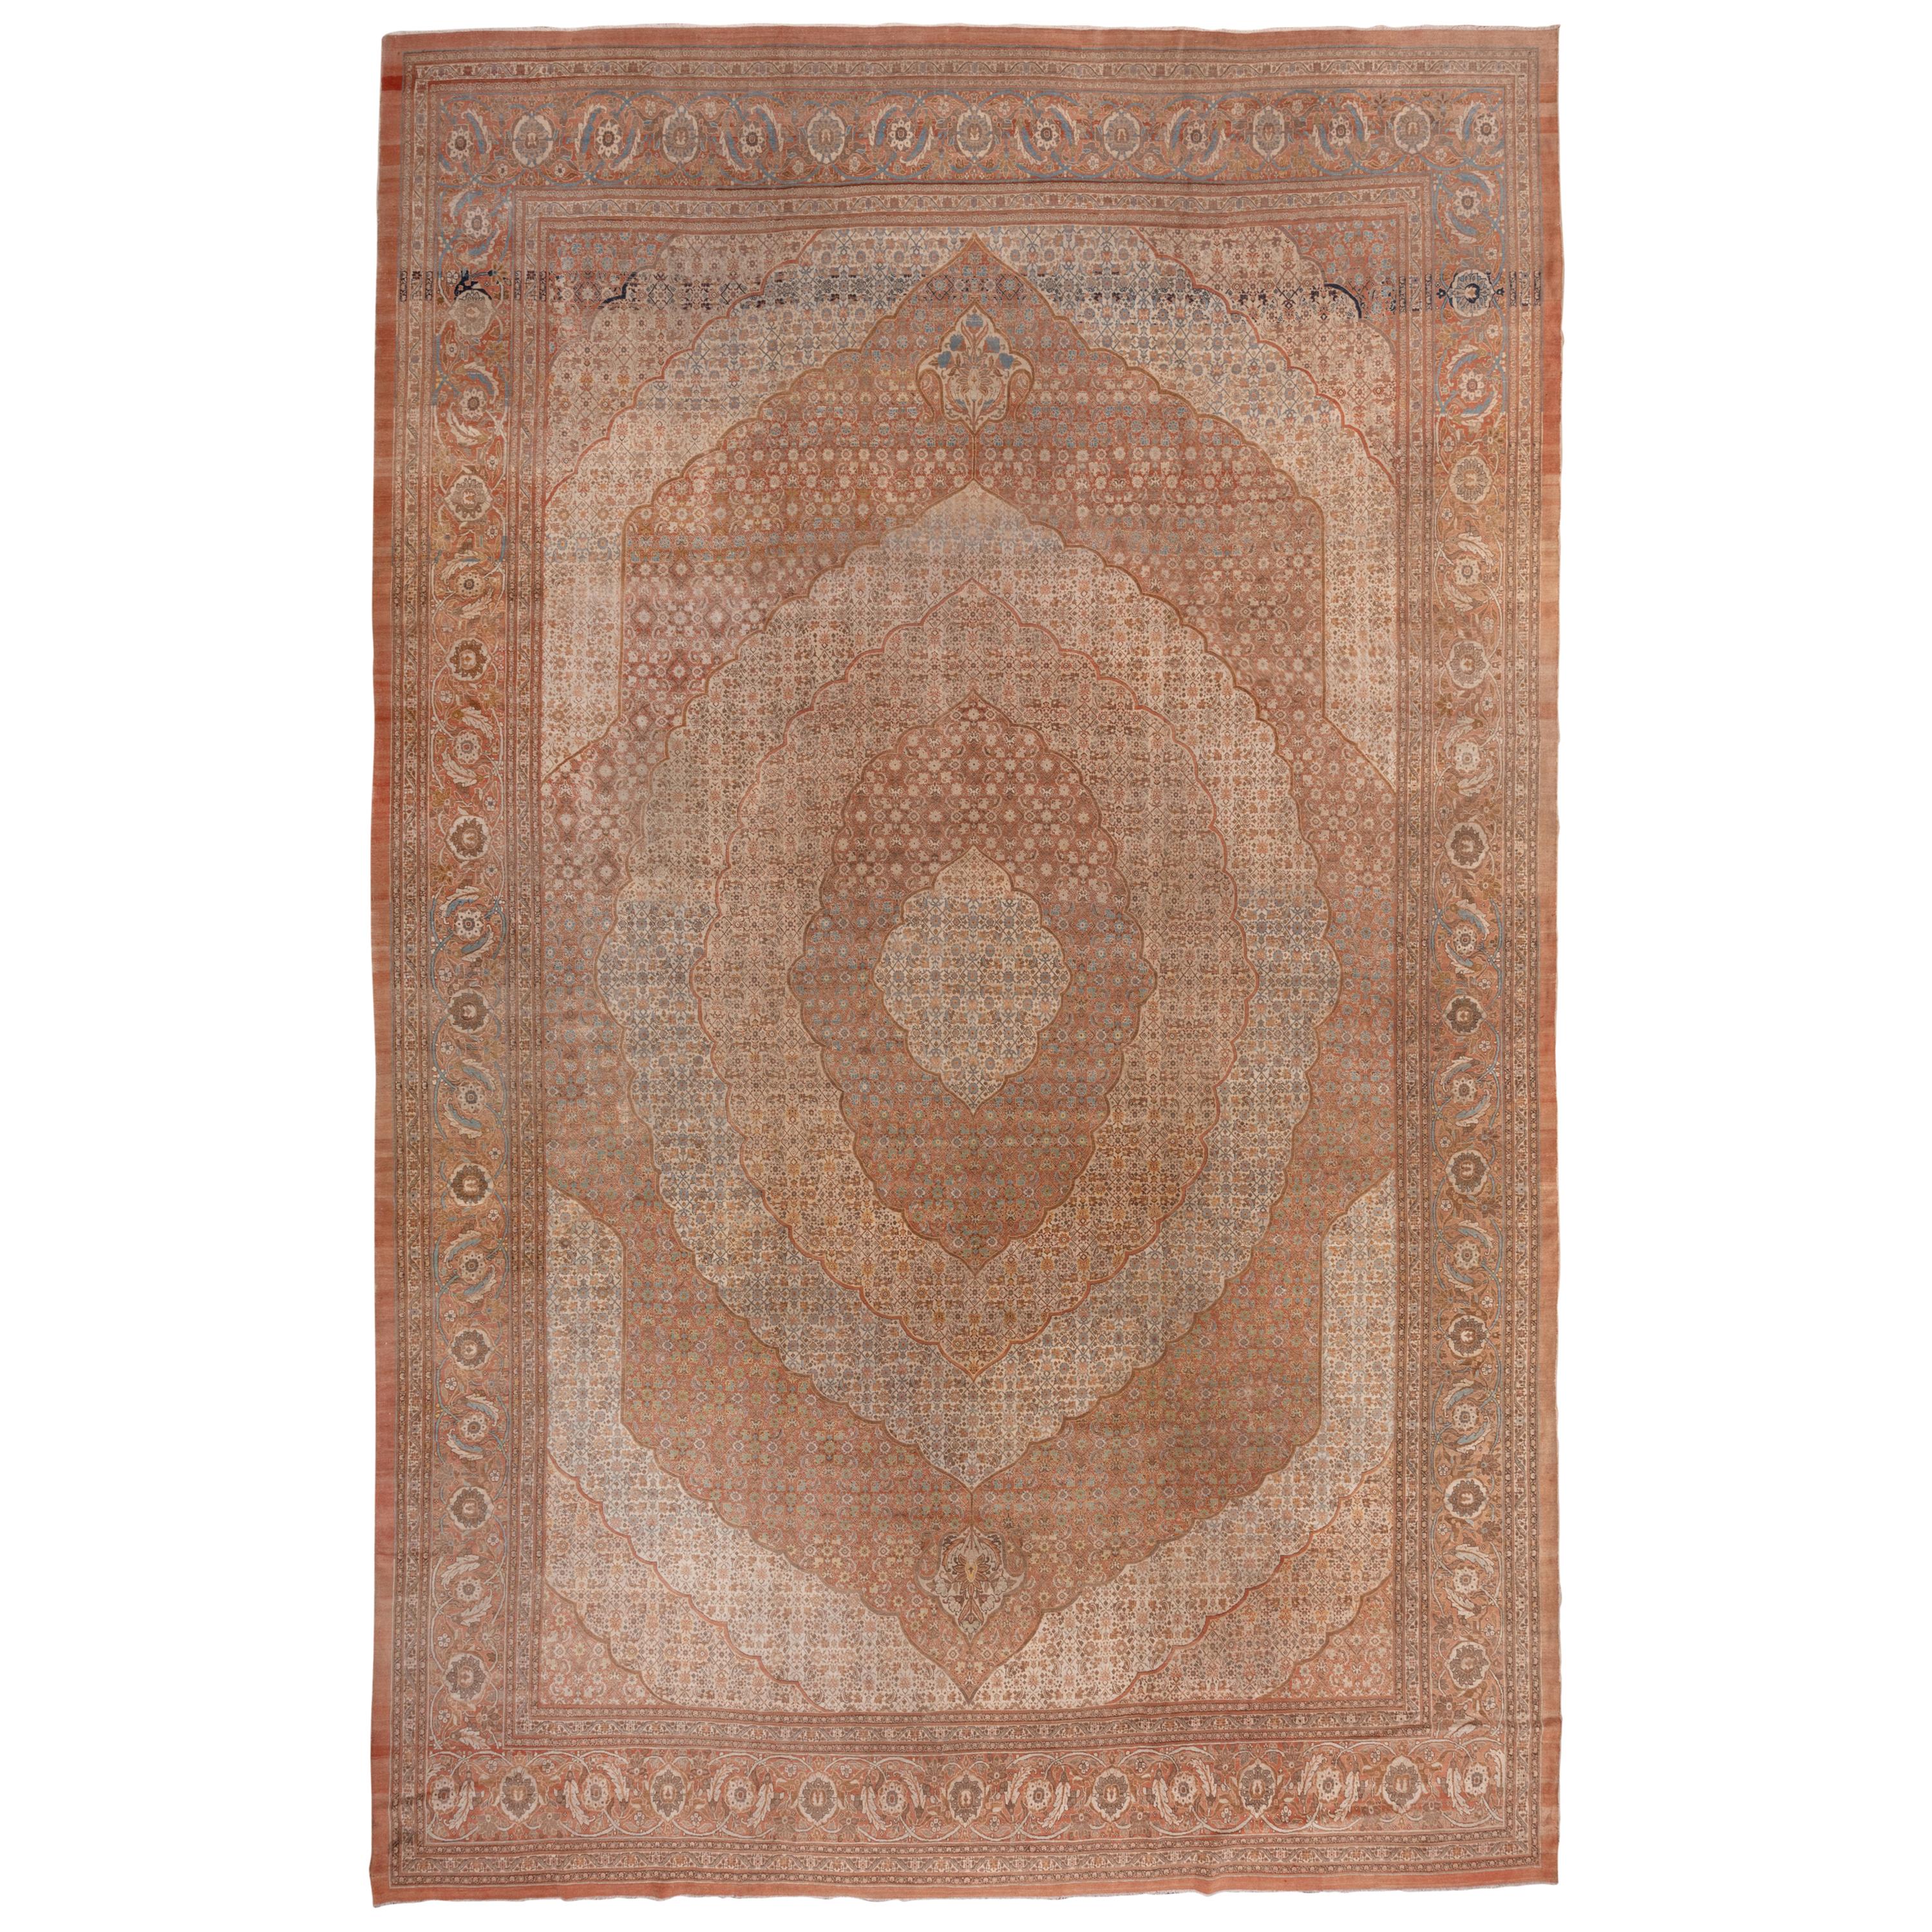 Antique Orange Persian Tabriz Carpet, circa 1890s